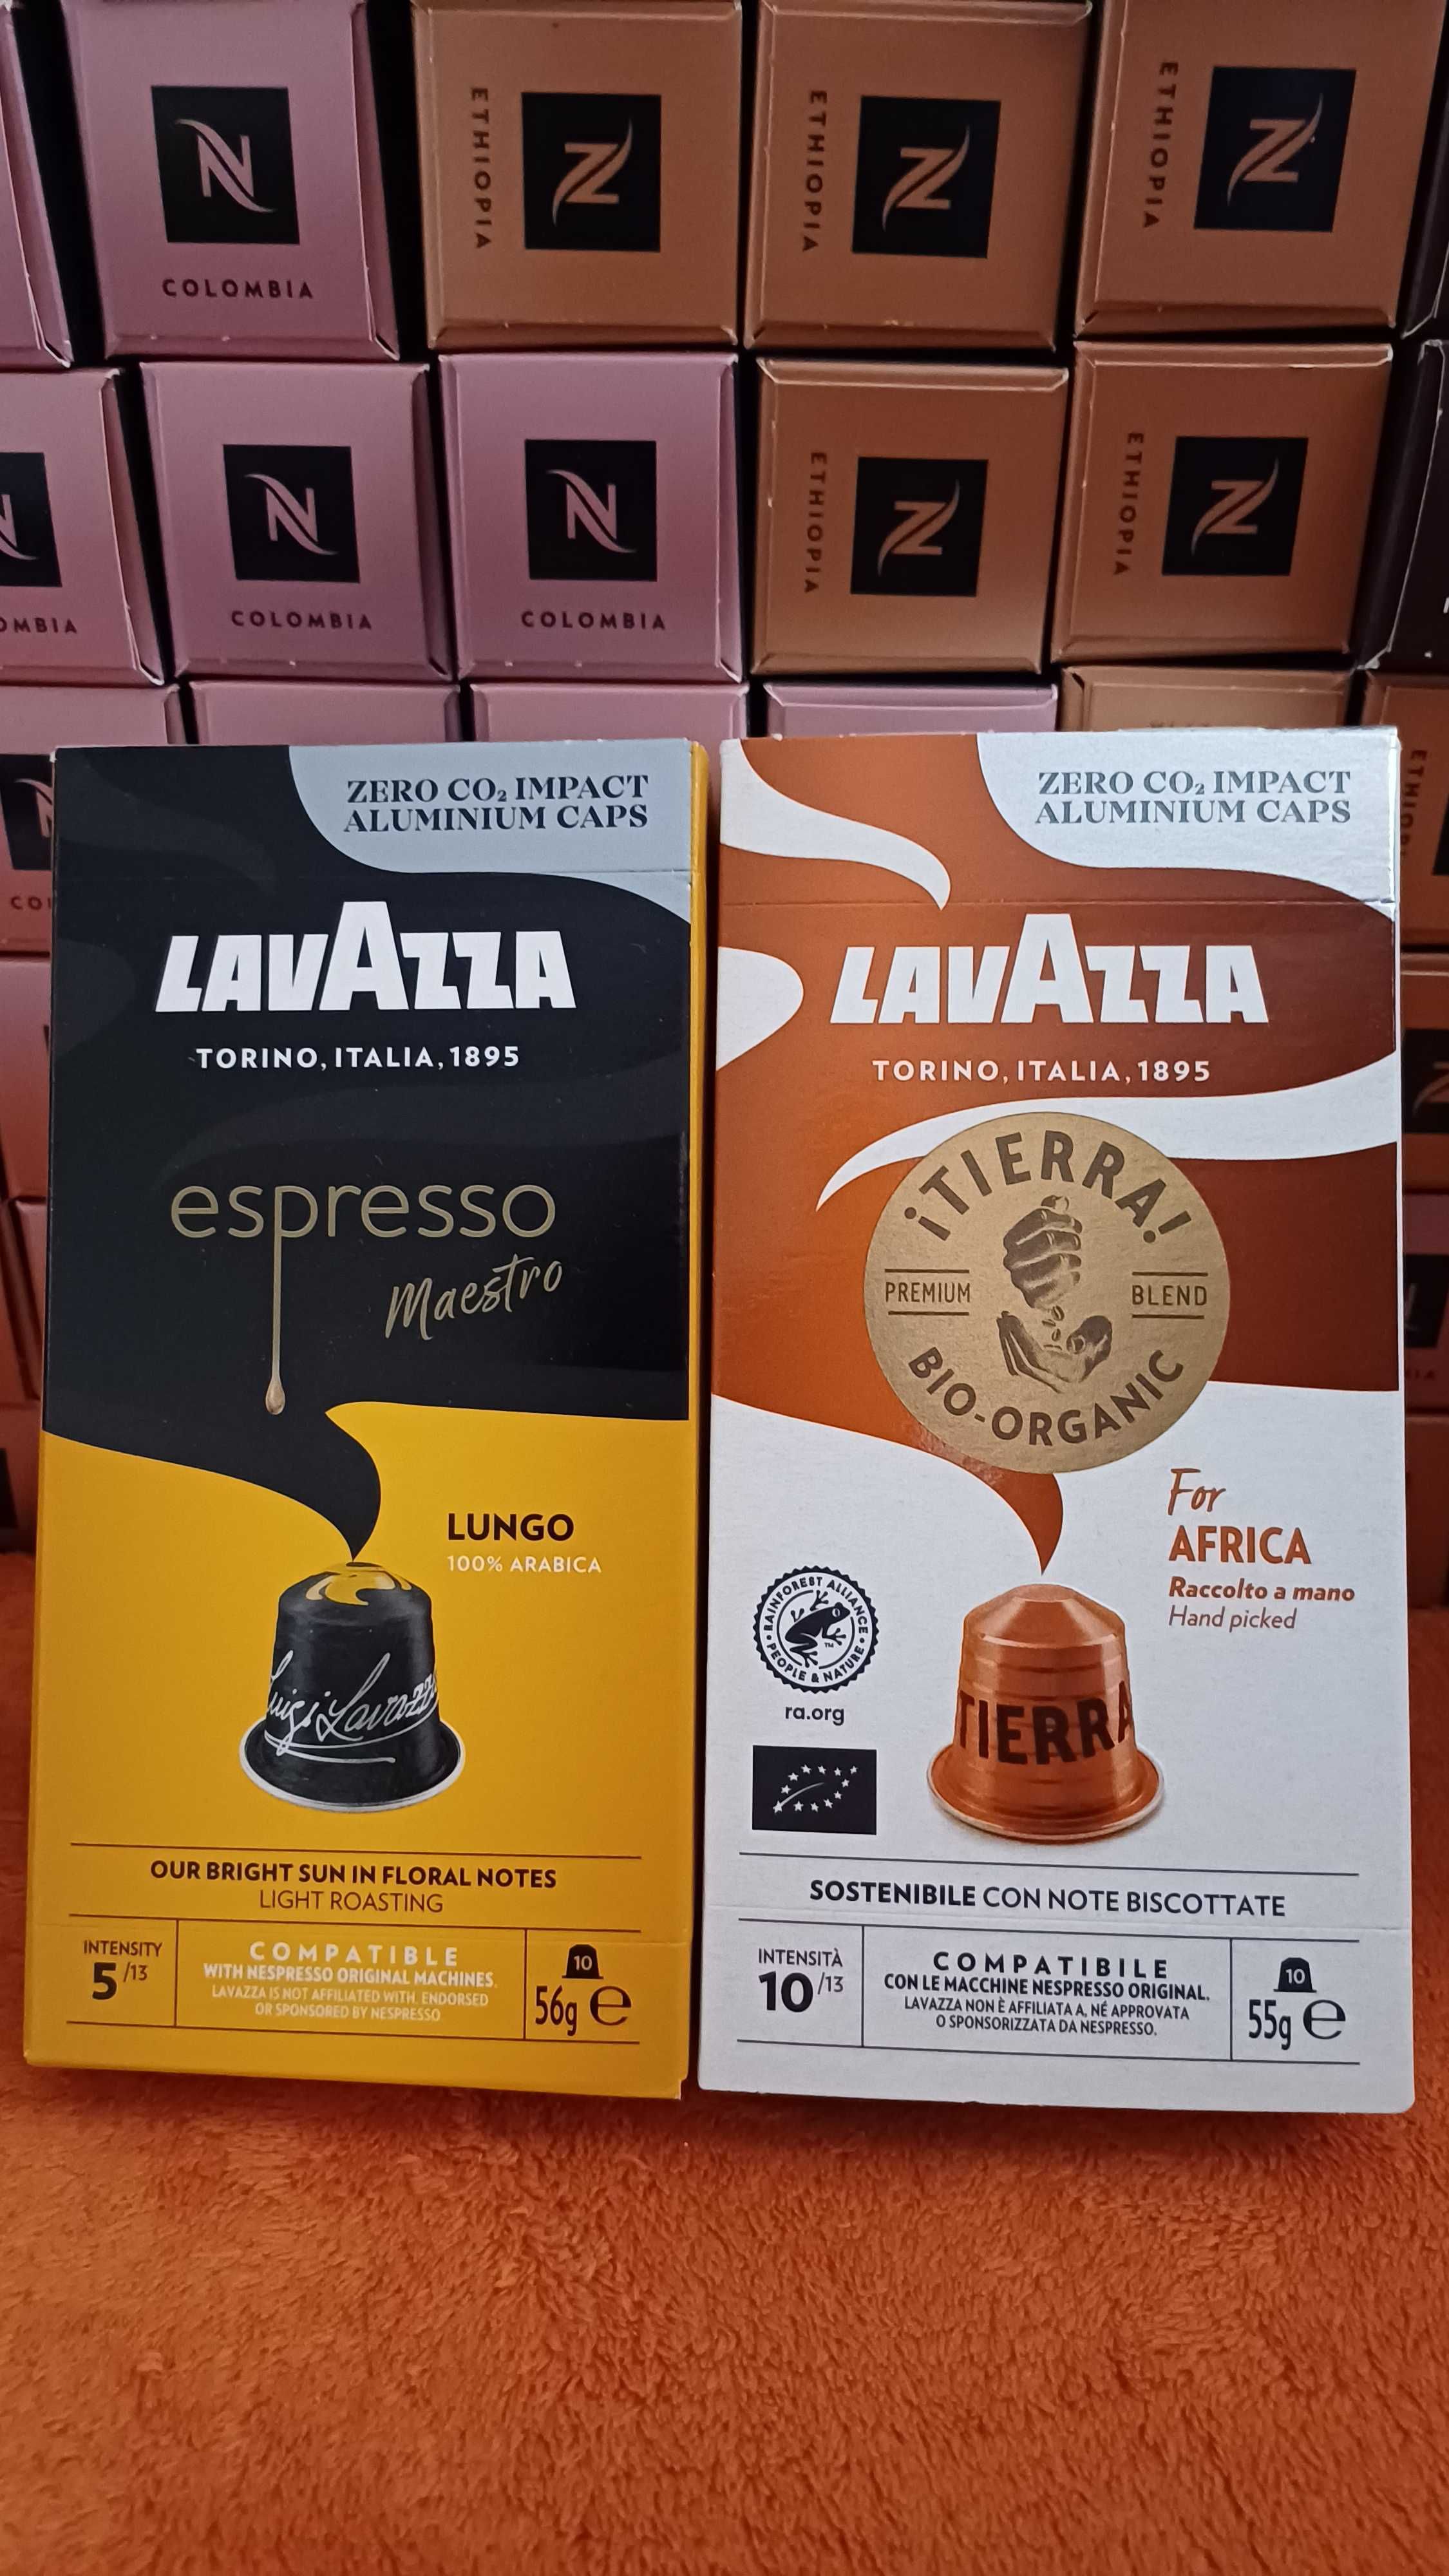 Кава в капсулах Lavazza , L'or для систем Nesspreso.